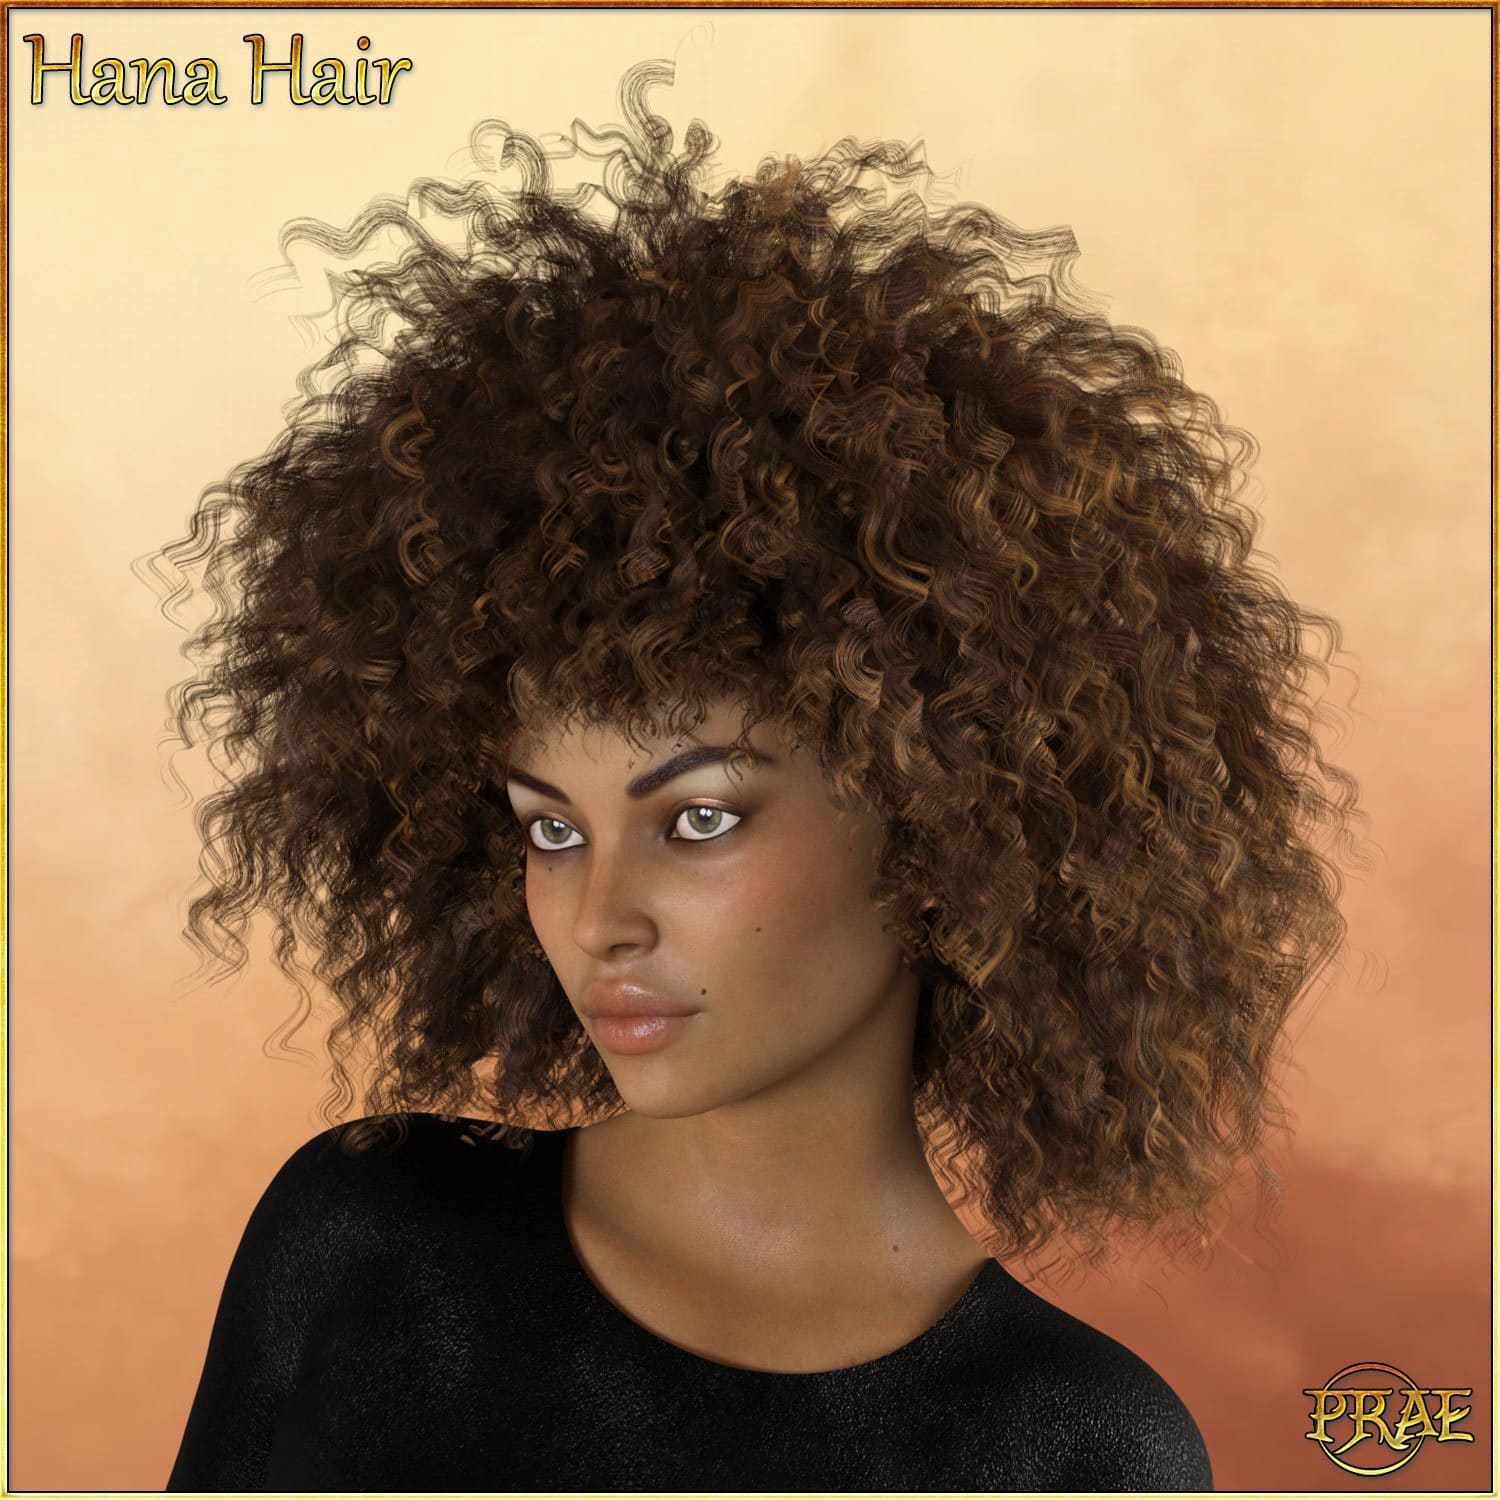 Prae-Hana Hair G8 Daz_DAZ3D下载站